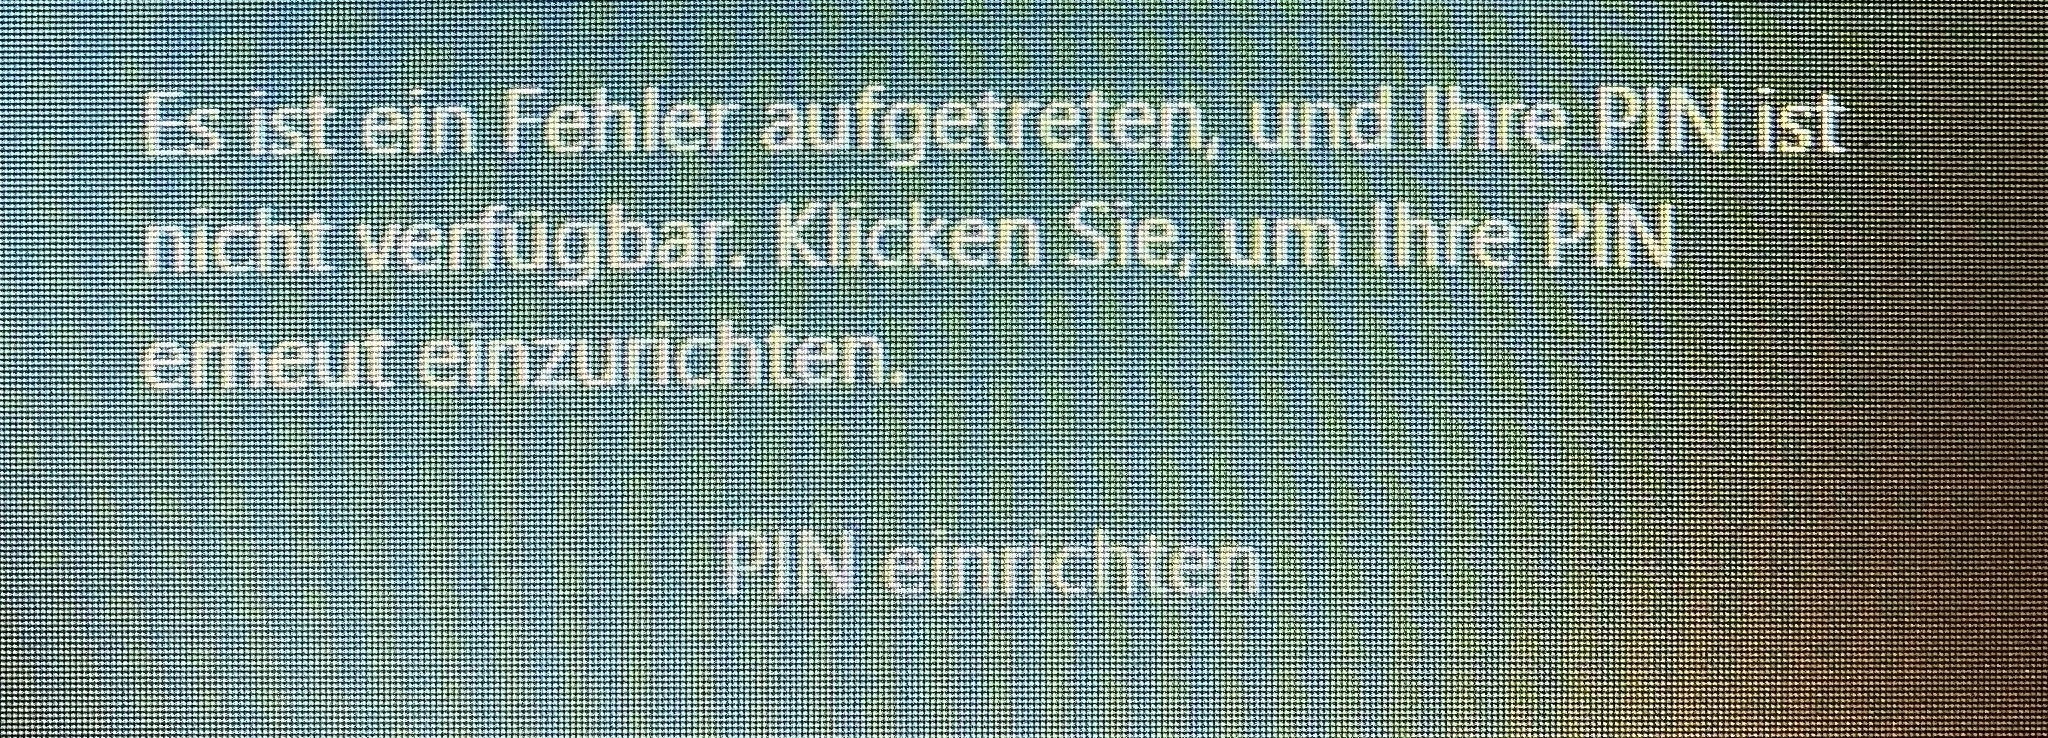 PIN ist nicht verfügbar! Keine Möglichkeit der Windowsanmeldung nach RAM-Erweiterung